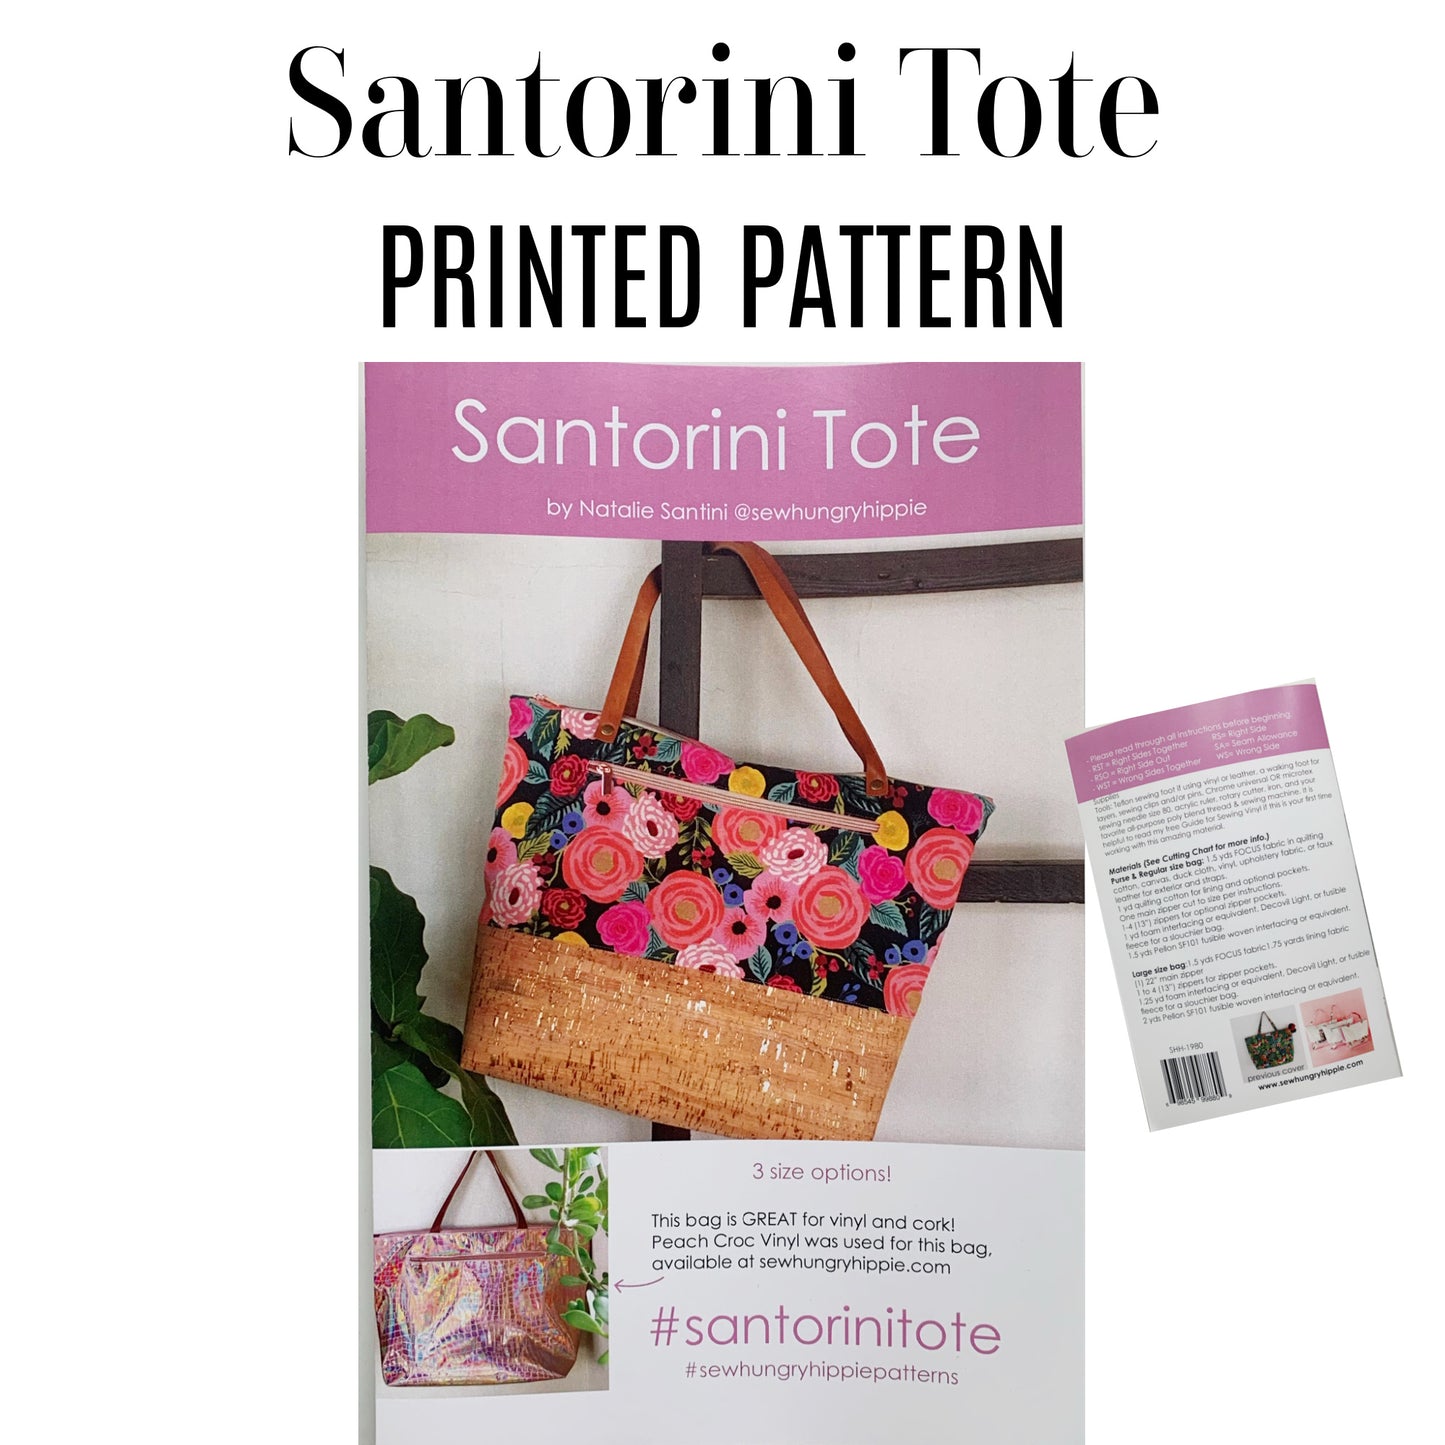 Santorini Tote printed pattern